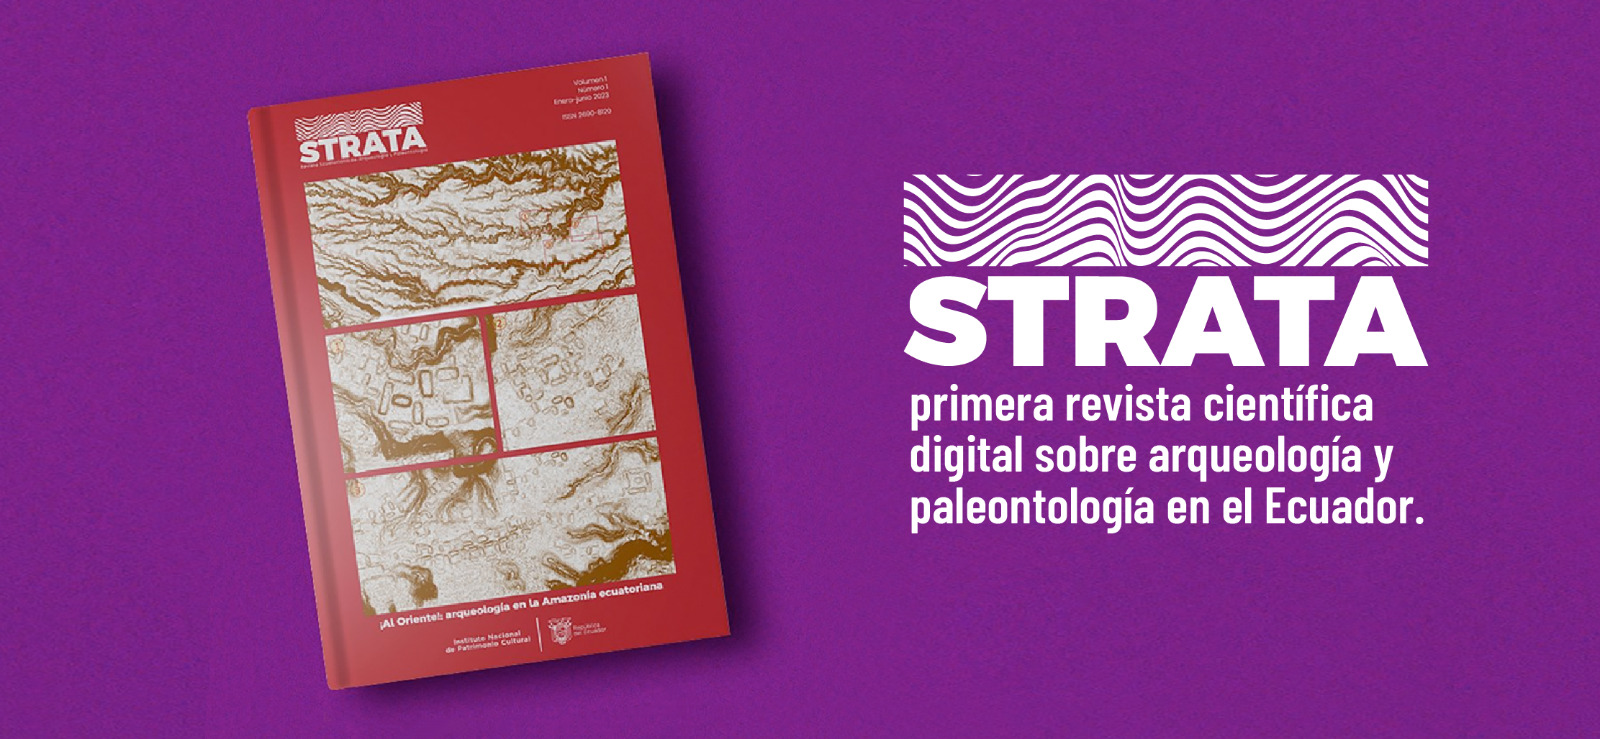 STRATA Revista Ecuatoriana de Arqueología y Paleontología